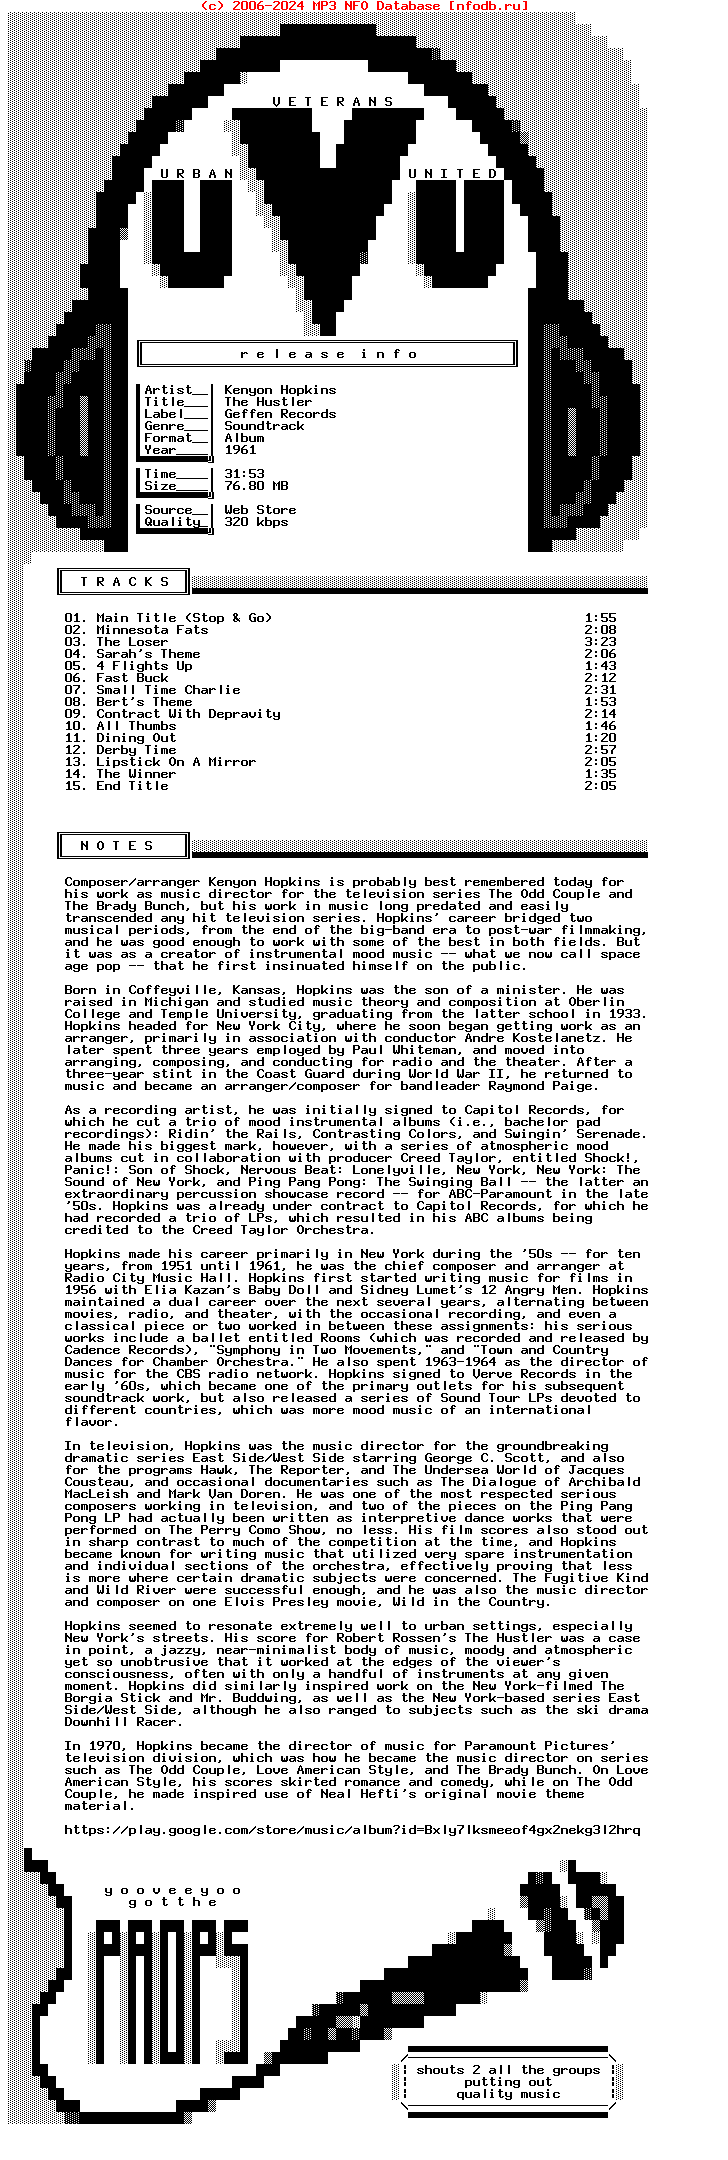 Kenyon_Hopkins-The_Hustler-Ost-WEB-1961-Uvu